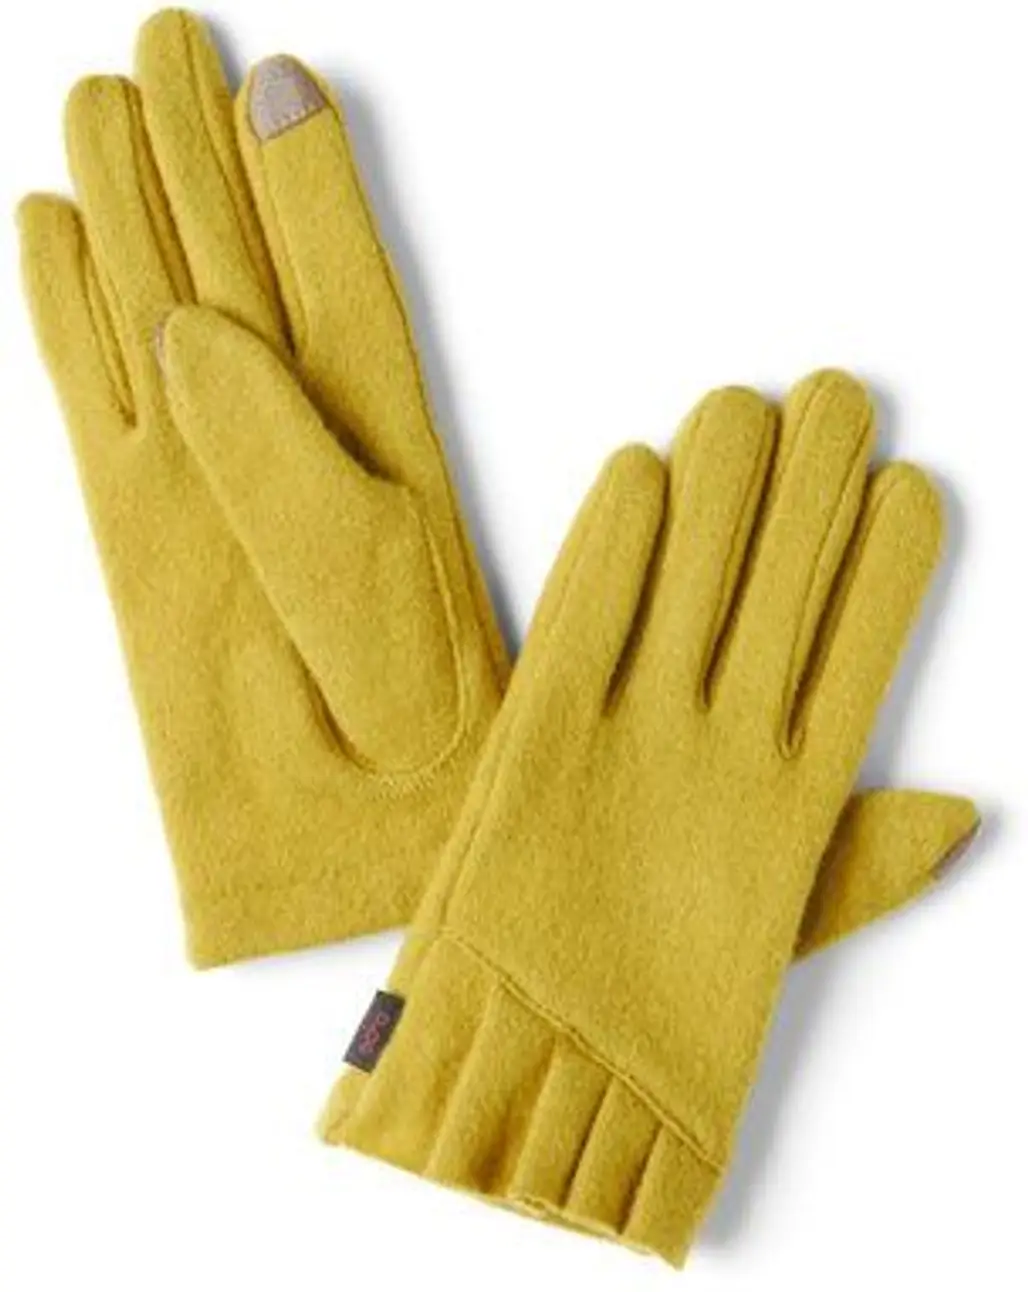 Coloured Gloves